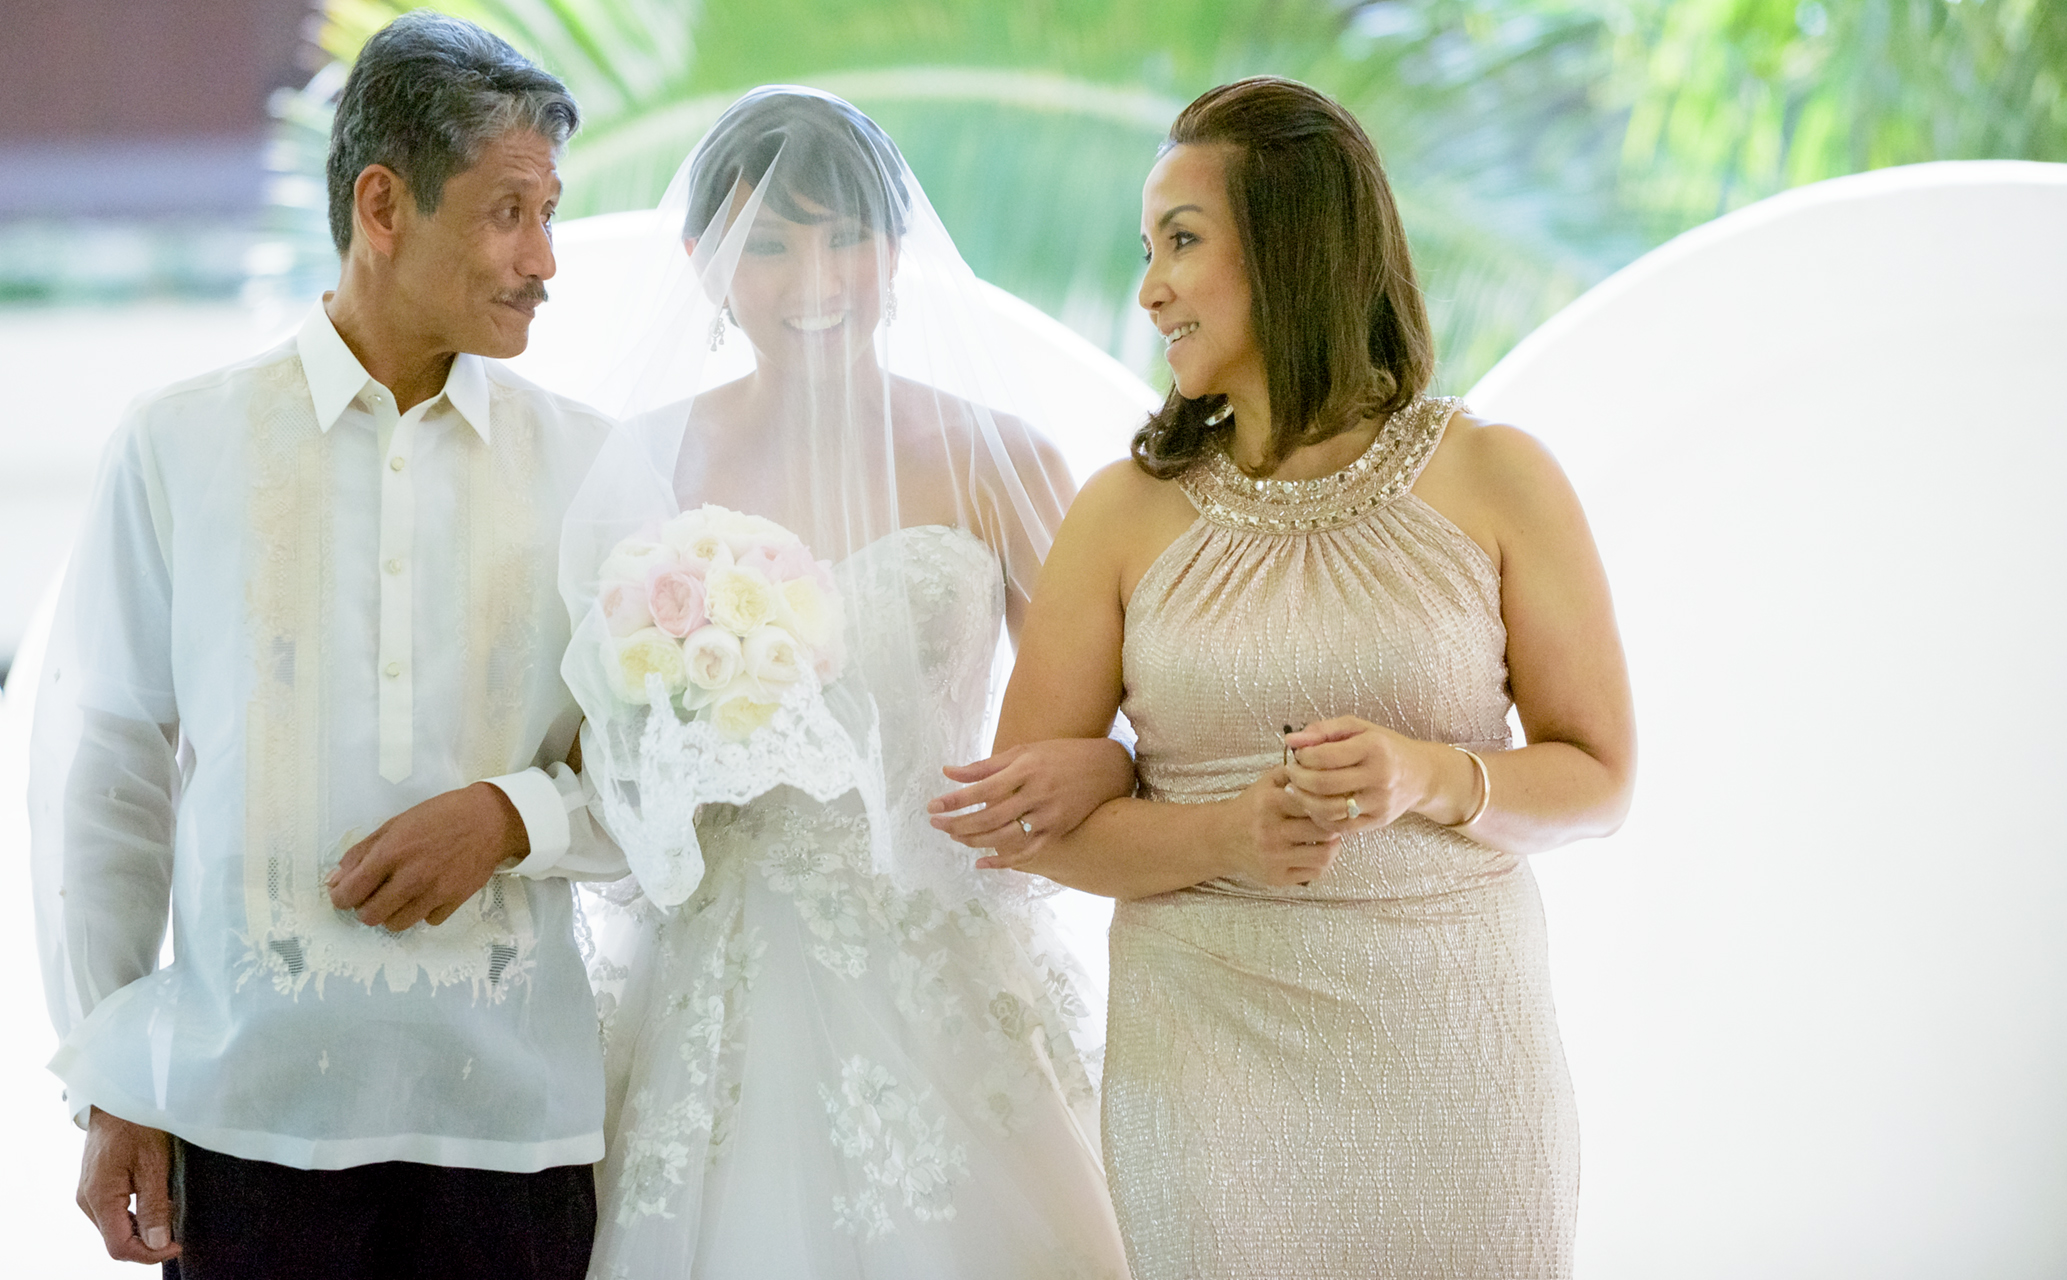 Wedding ceremony at Akala Chapel at Hilton Hawaiian Village